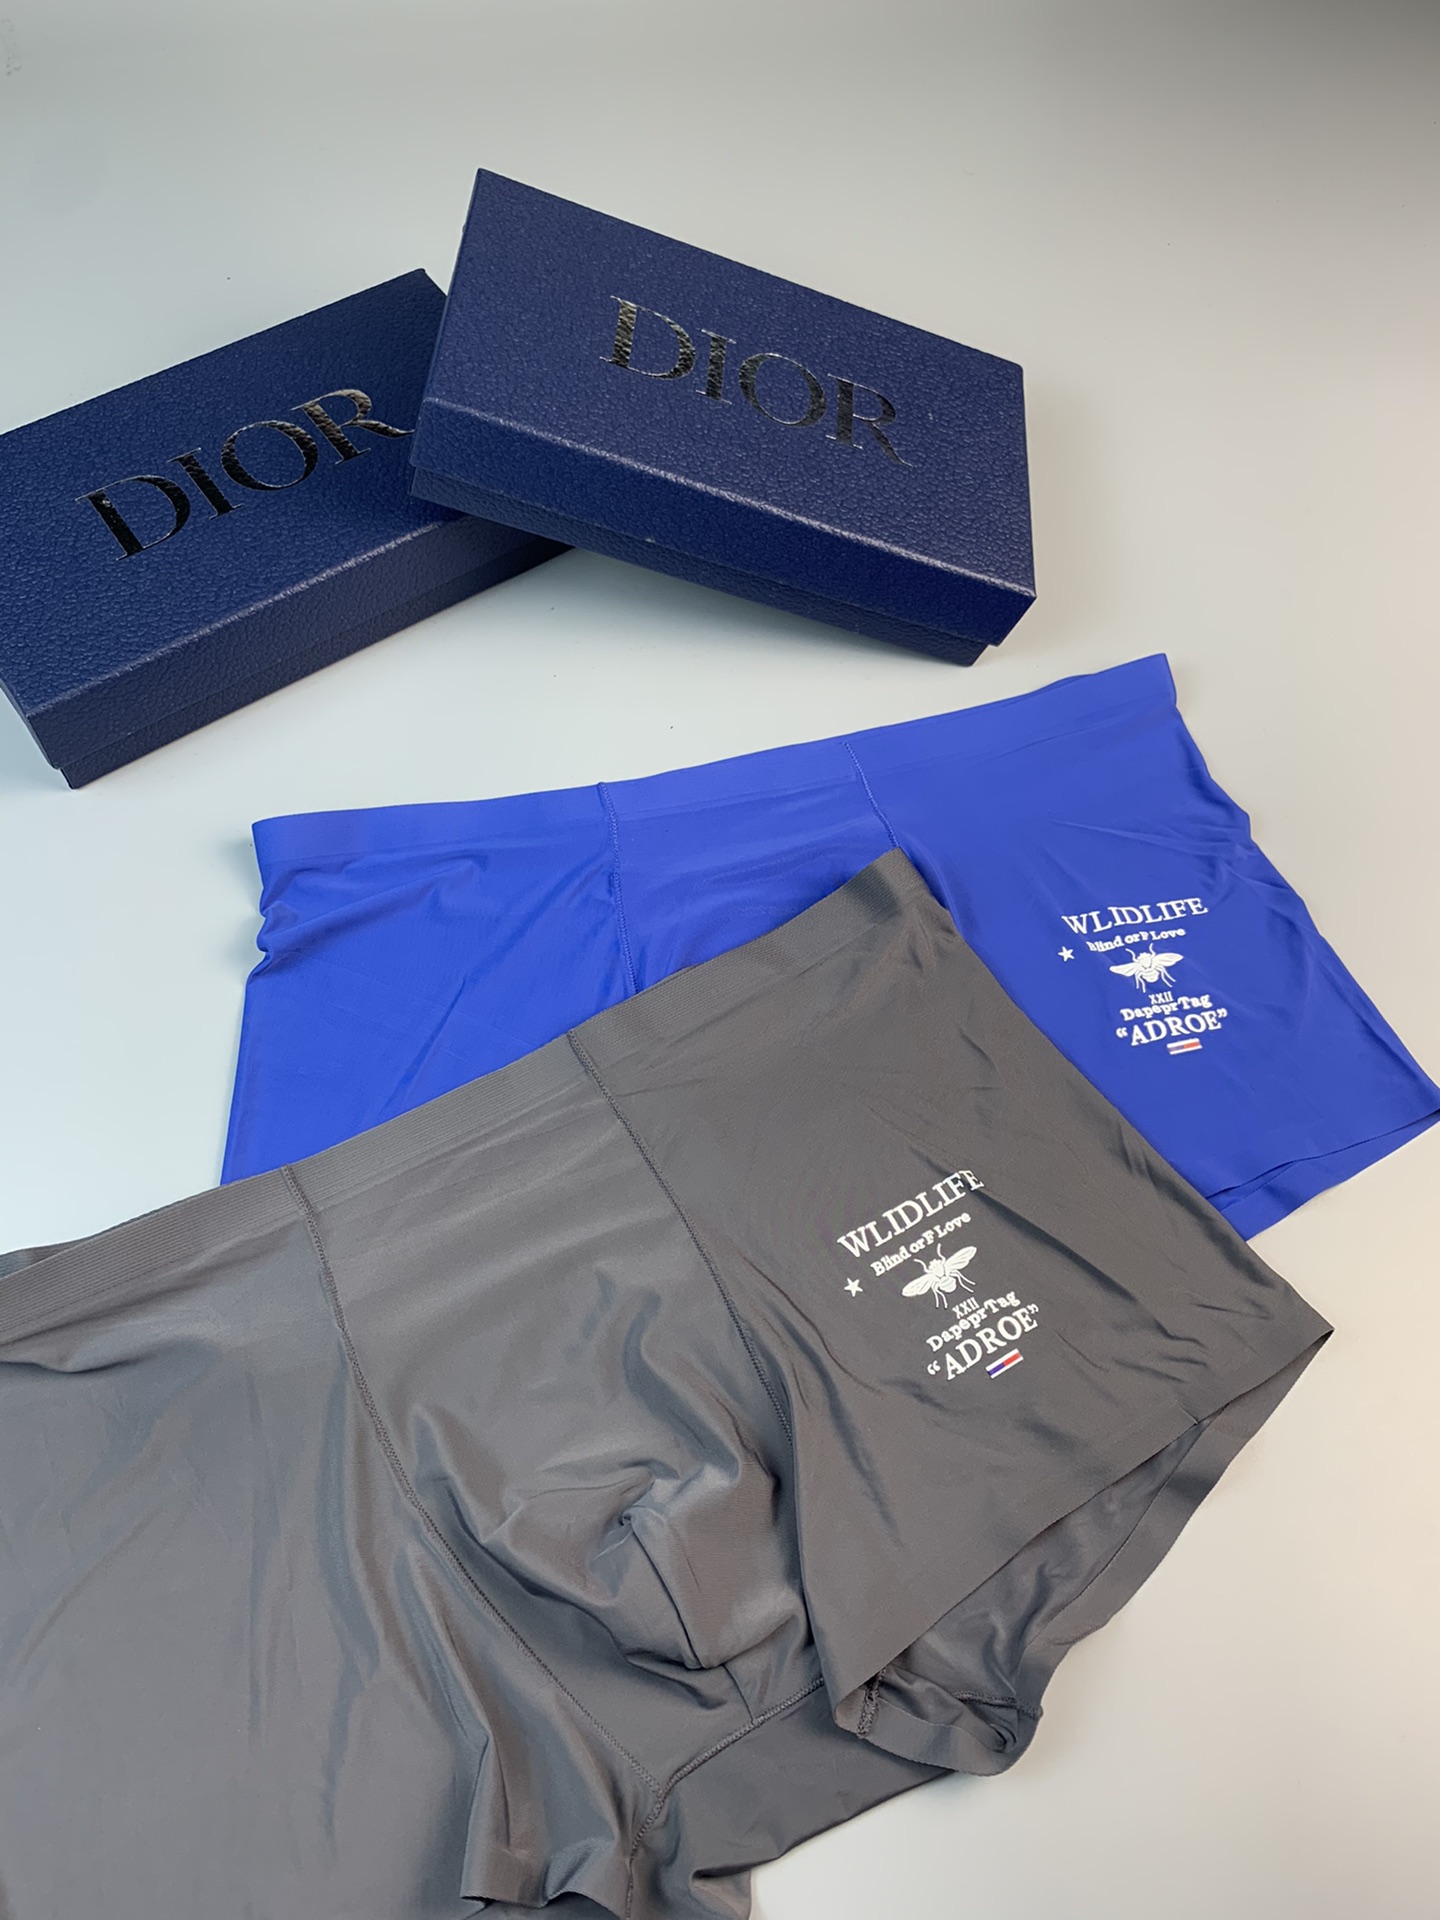 Dior时尚新品！轻薄透设计采用进口